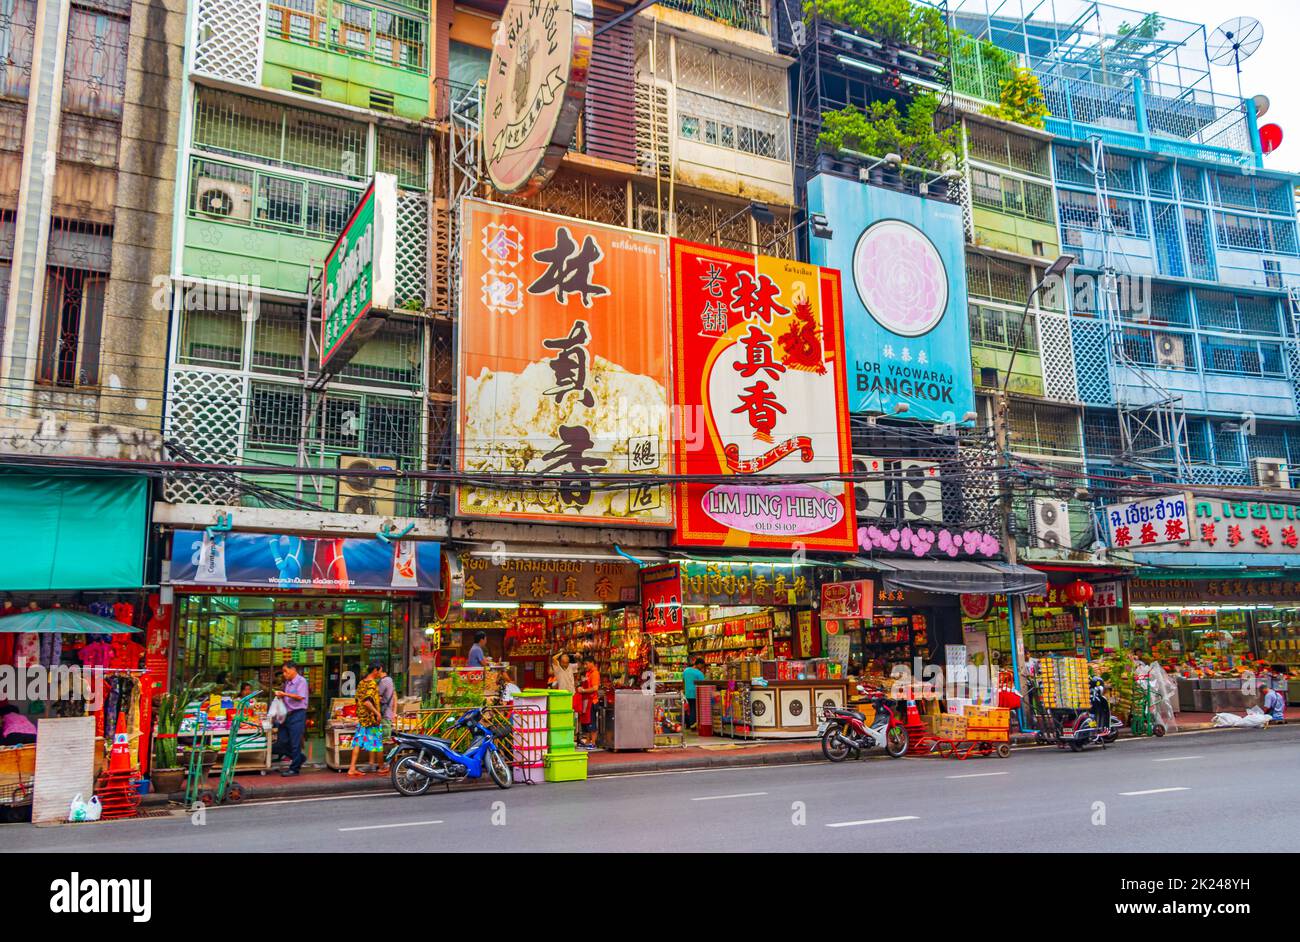 Bangkok Thaïlande 22. Mai 2018 des rues commerçantes colorées typiques plein de signes et de gens Chine ville sur Yaowarat Road Bangkok Thaïlande. Banque D'Images